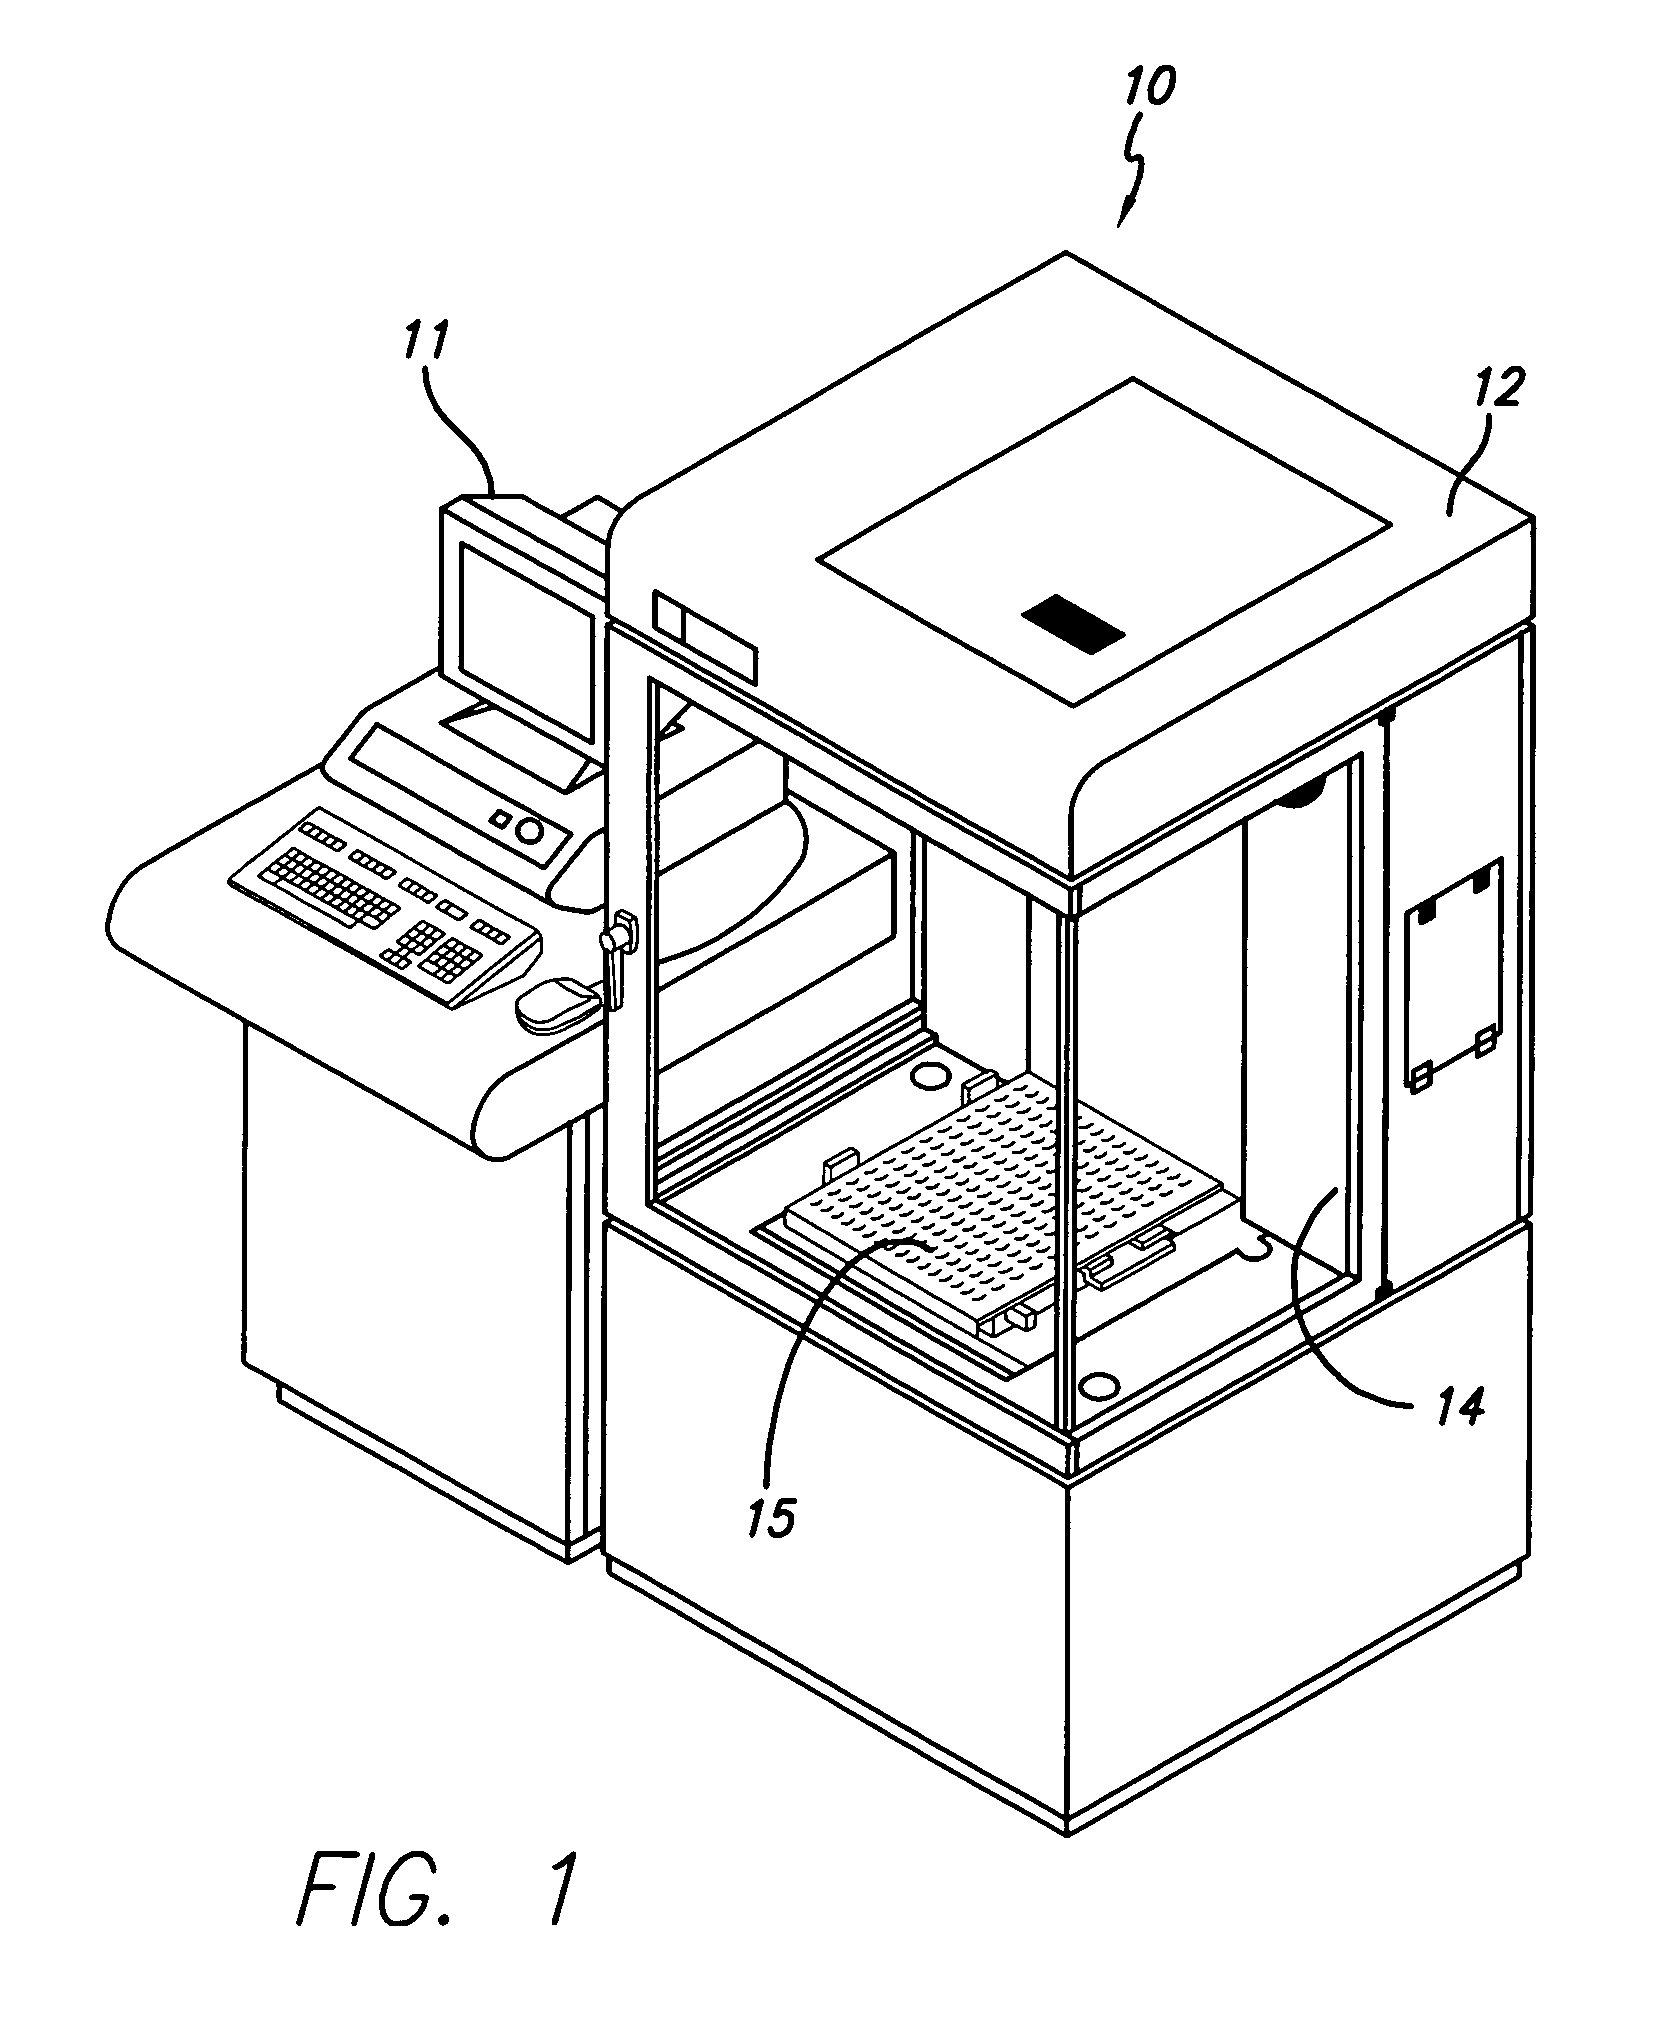 Multiple vat leveling system